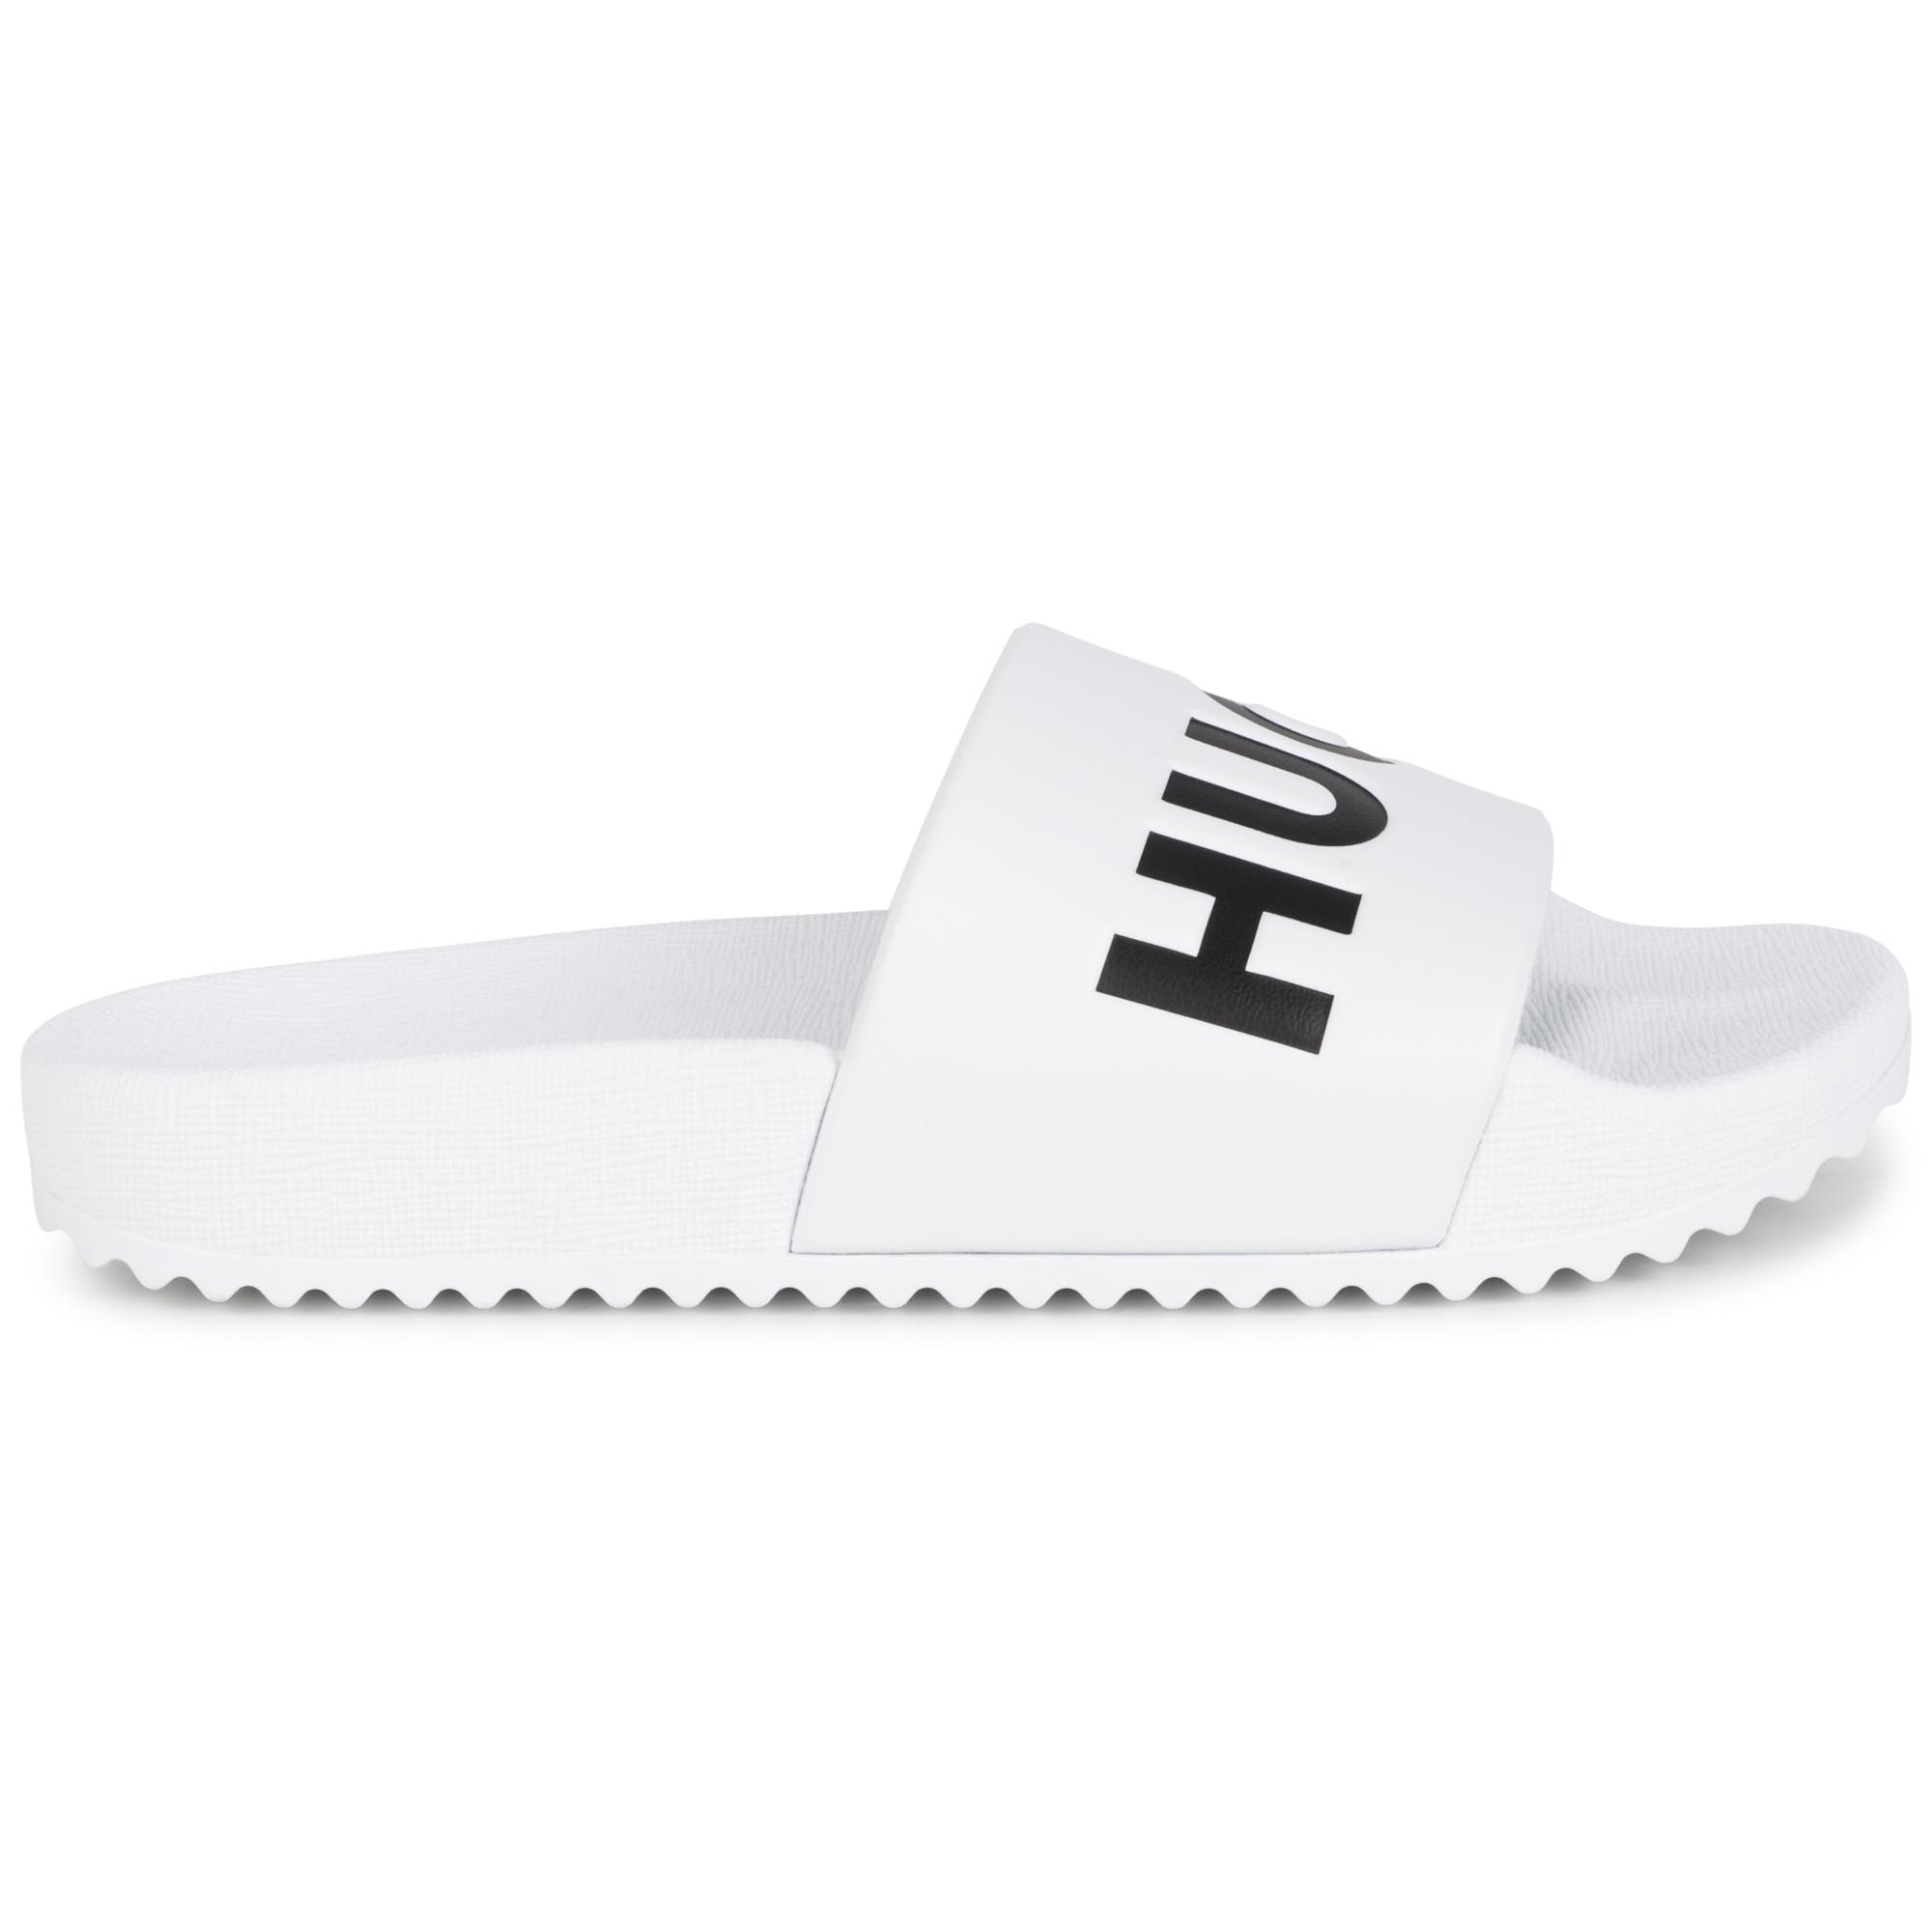 Slippers met logo HUGO Voor